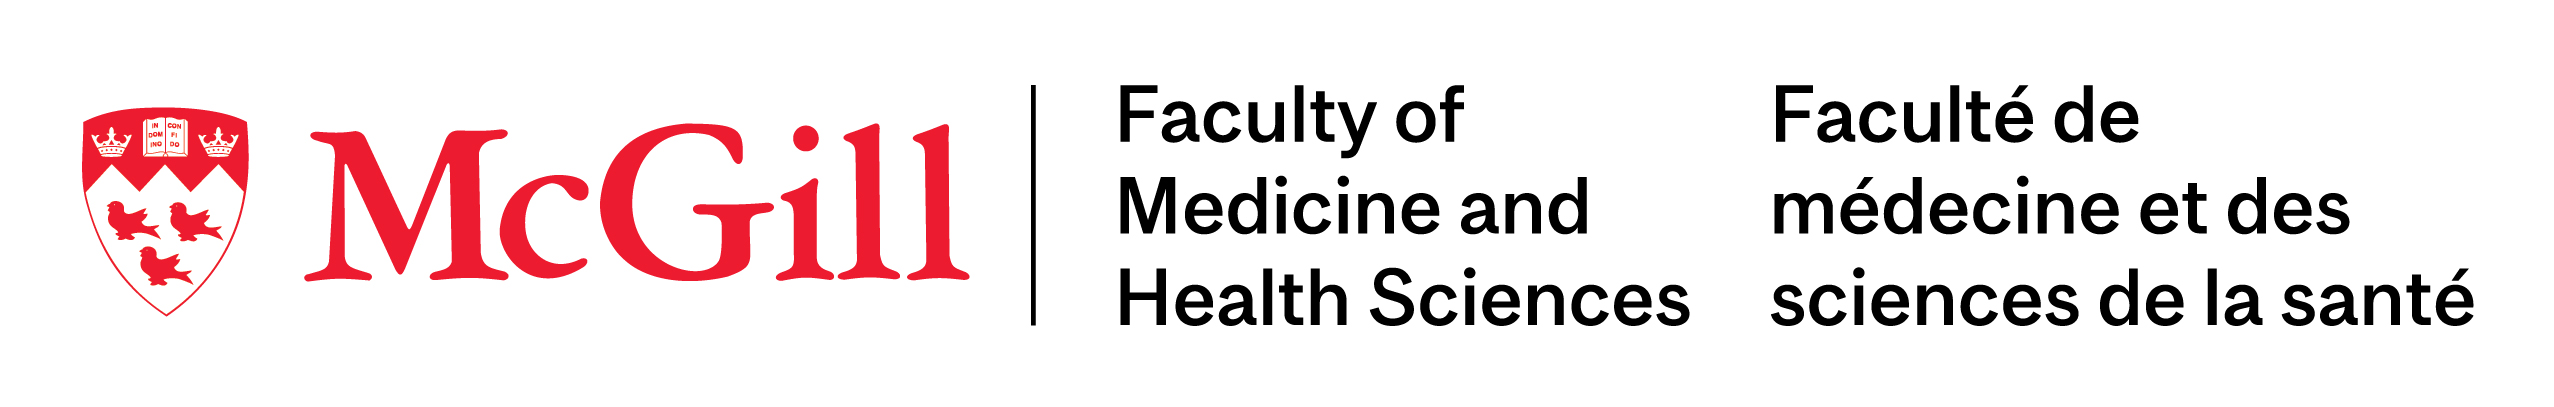 Université McGill – Faculté de médecine et des sciences de la santé